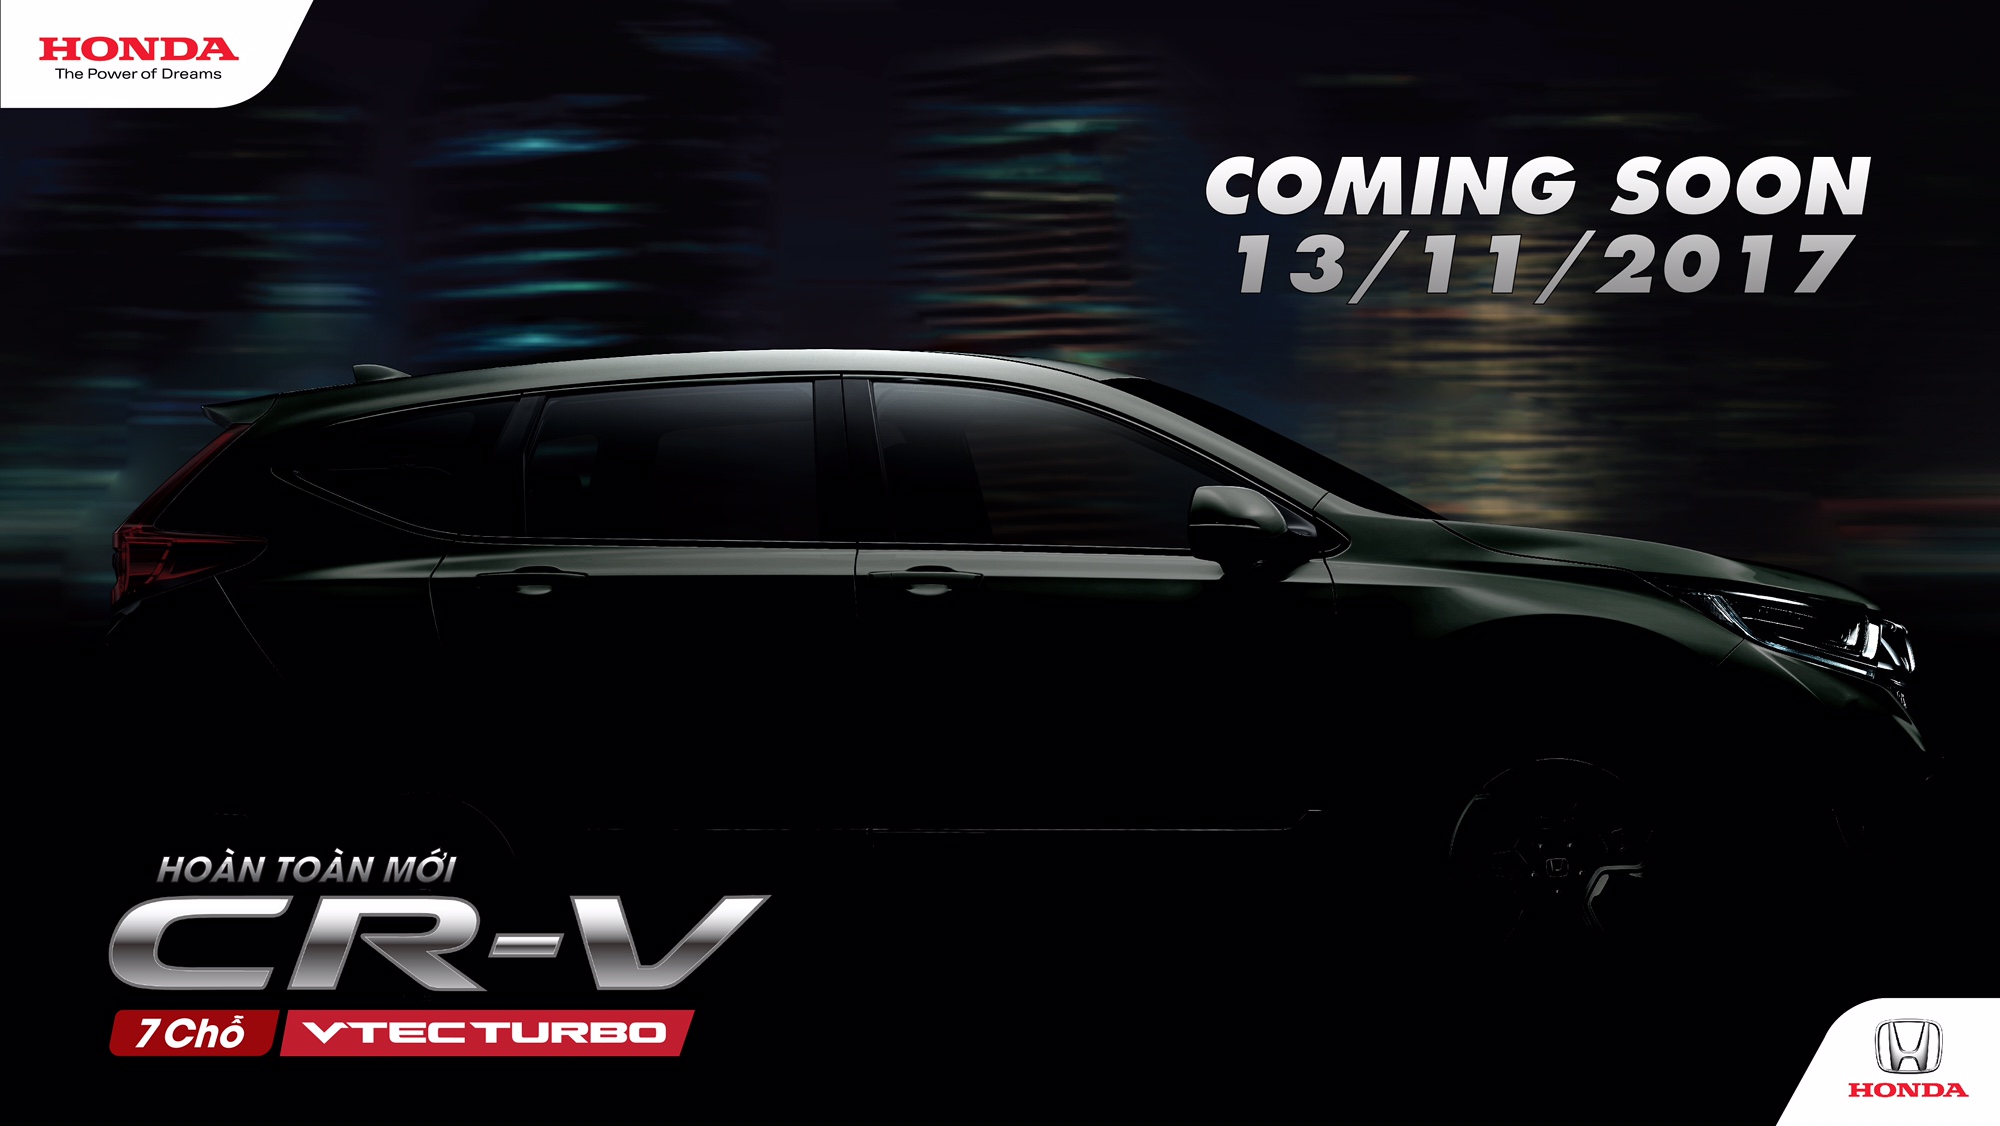 Honda CR-V 7 chỗ sẽ ra mắt giữa tháng 11/2017